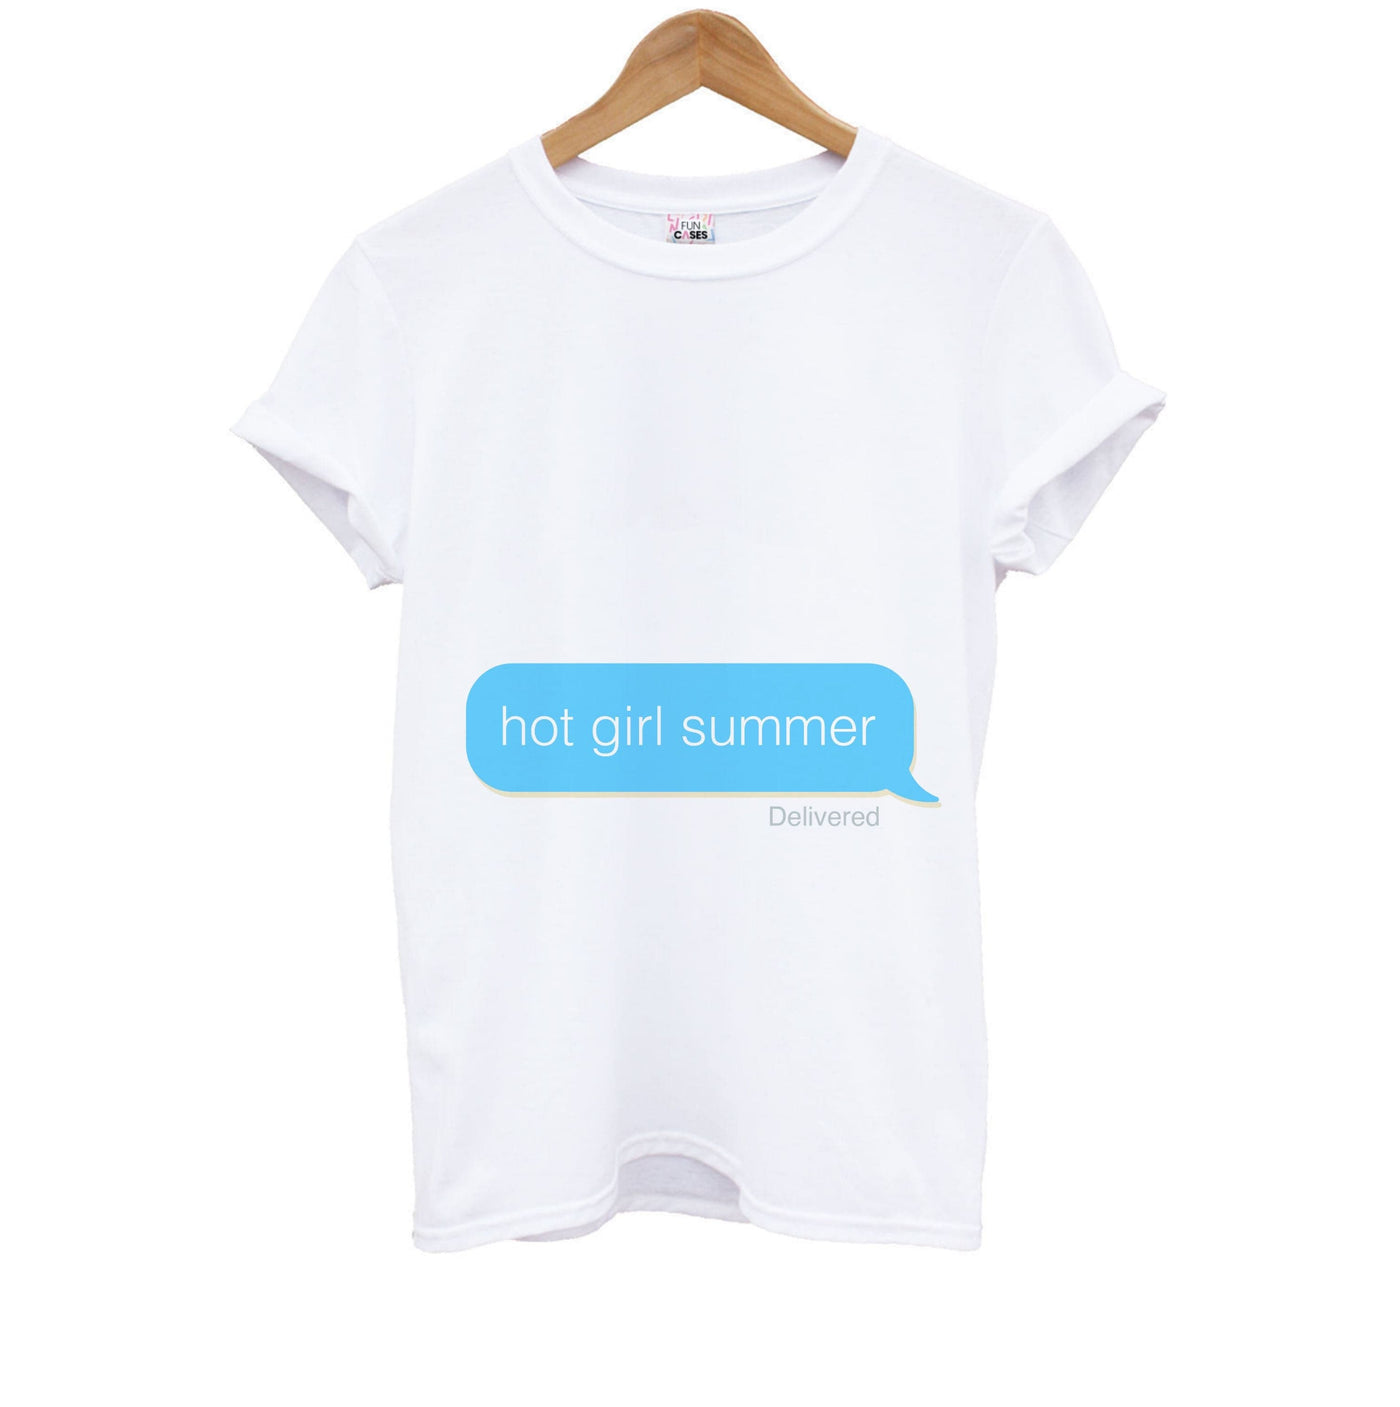 Hot Girl Summer Text - Summer Kids T-Shirt